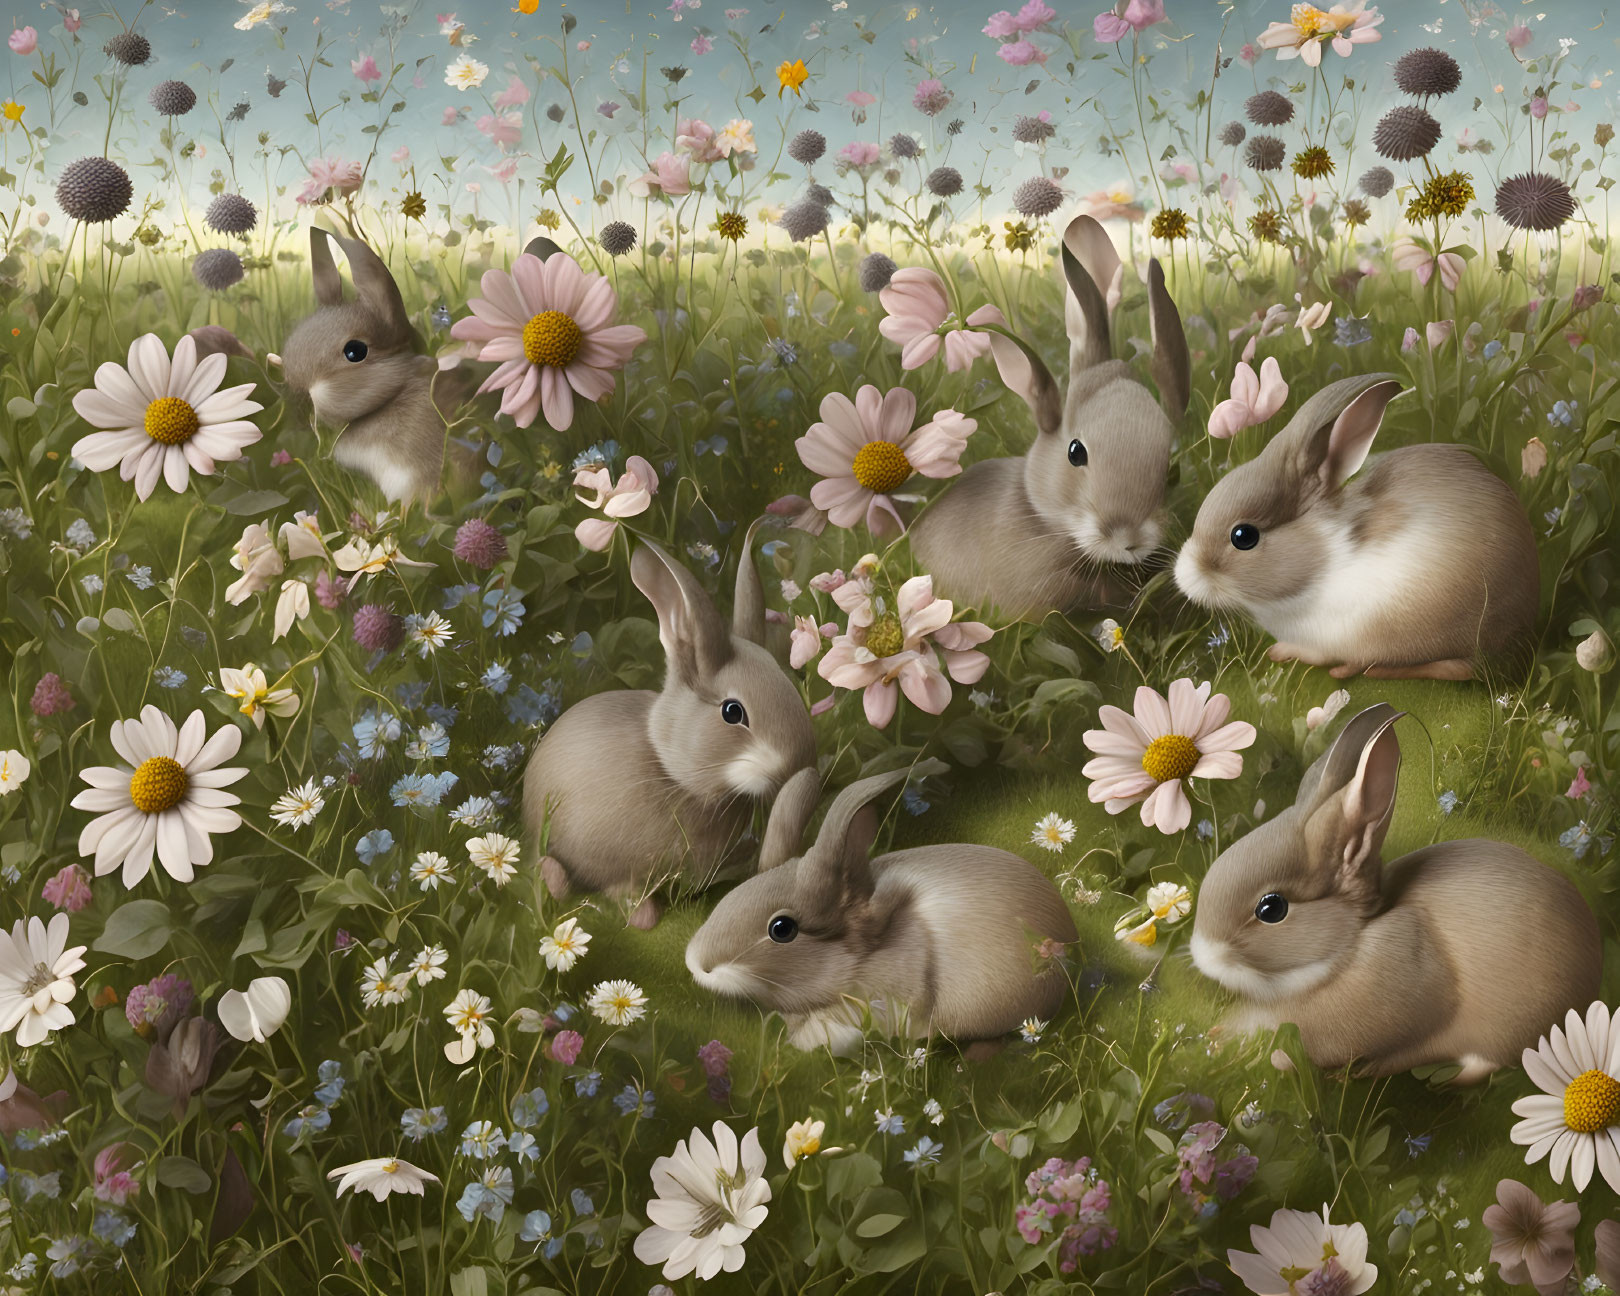 Six rabbits in wildflower field under blue sky